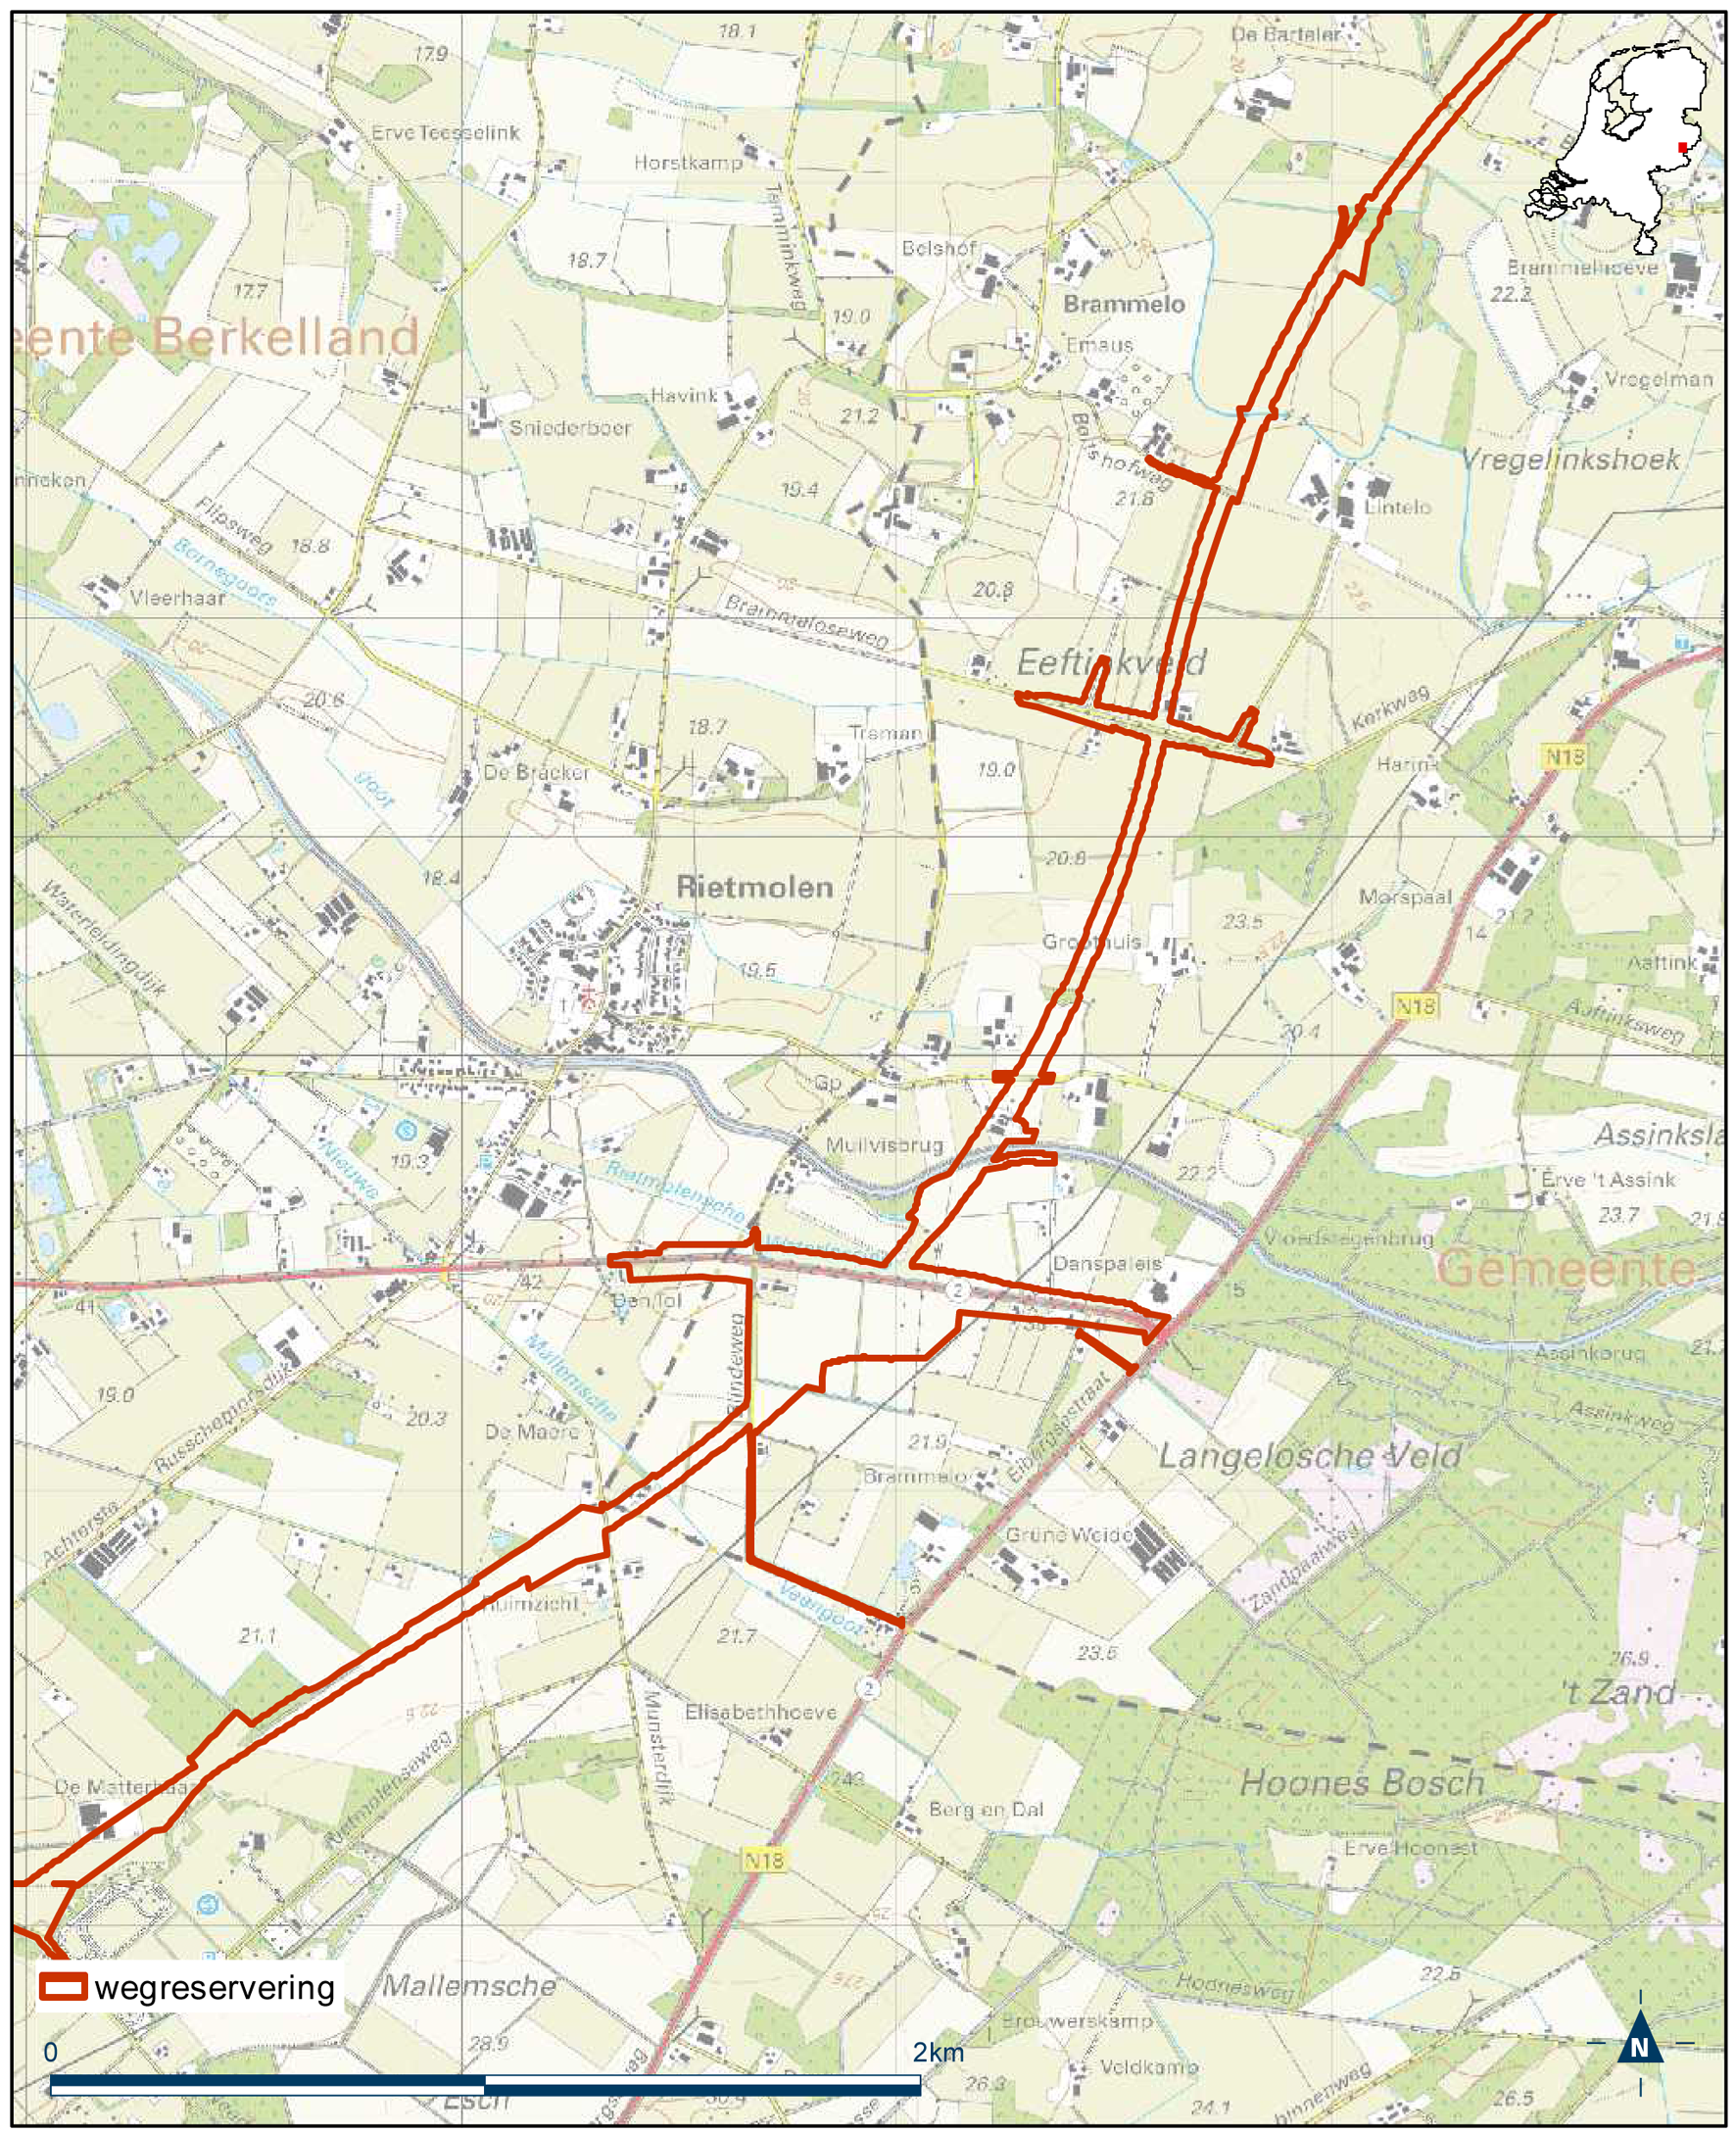 Detailkaart 7 reserveringsgebied nieuwe hoofdweg N18 Varsseveld-Enschede